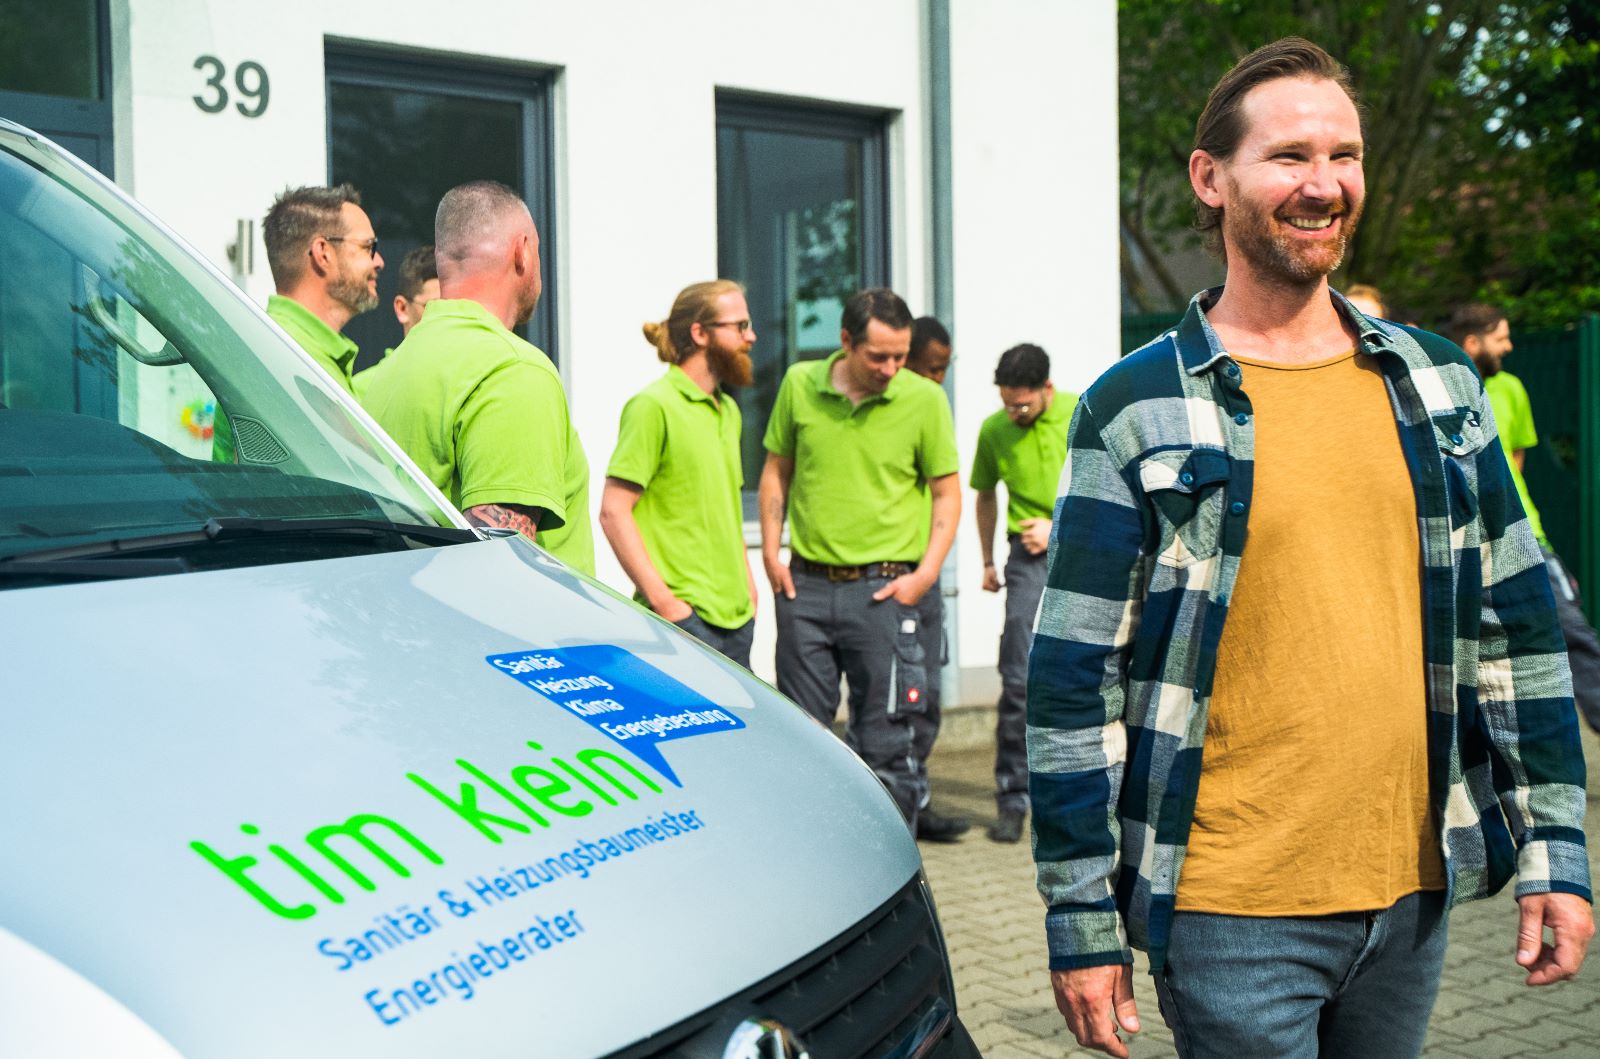 Tim Klein Sanitär- und Heizungsbaumeister GmbH - Ihr Fachbetrieb aus Ratingen für Sanitär, Heizung, Klima und Energieberatung.